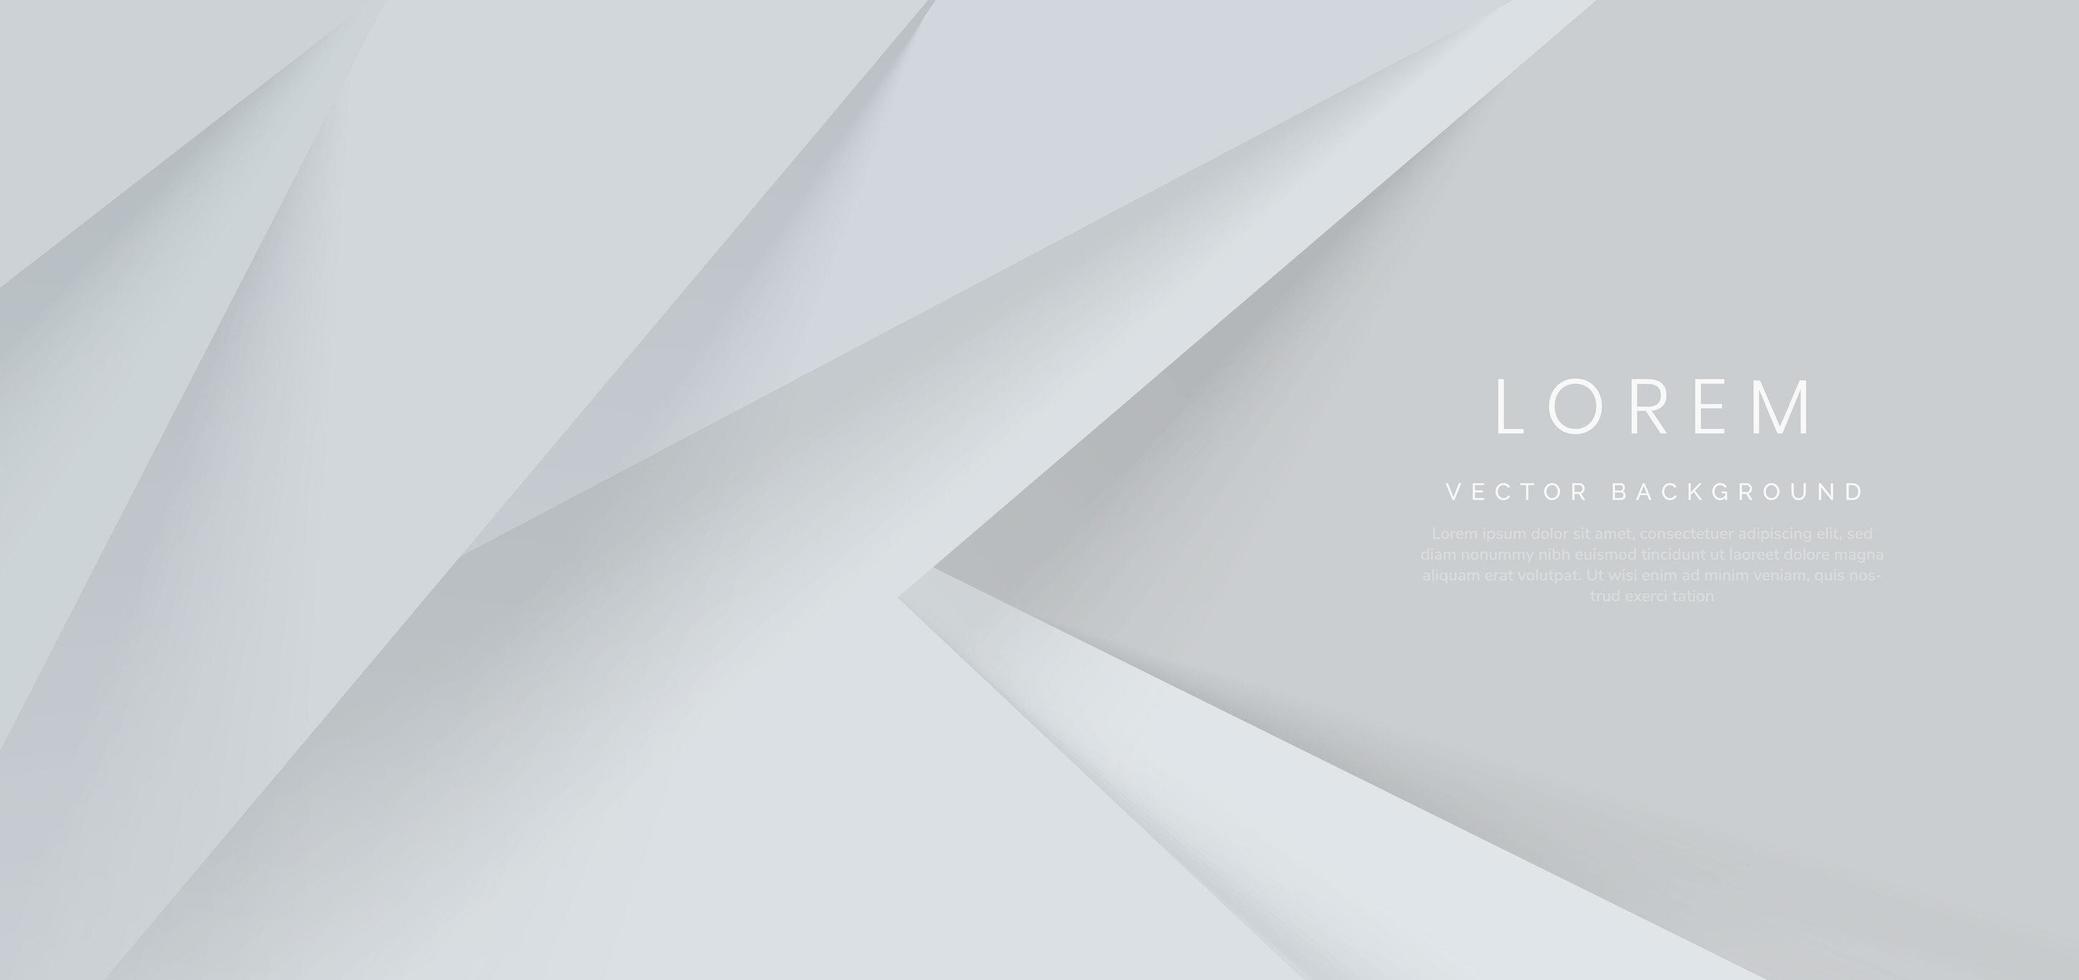 Fondo abstracto de capas de triángulos blancos y grises. estilo minimalista. vector